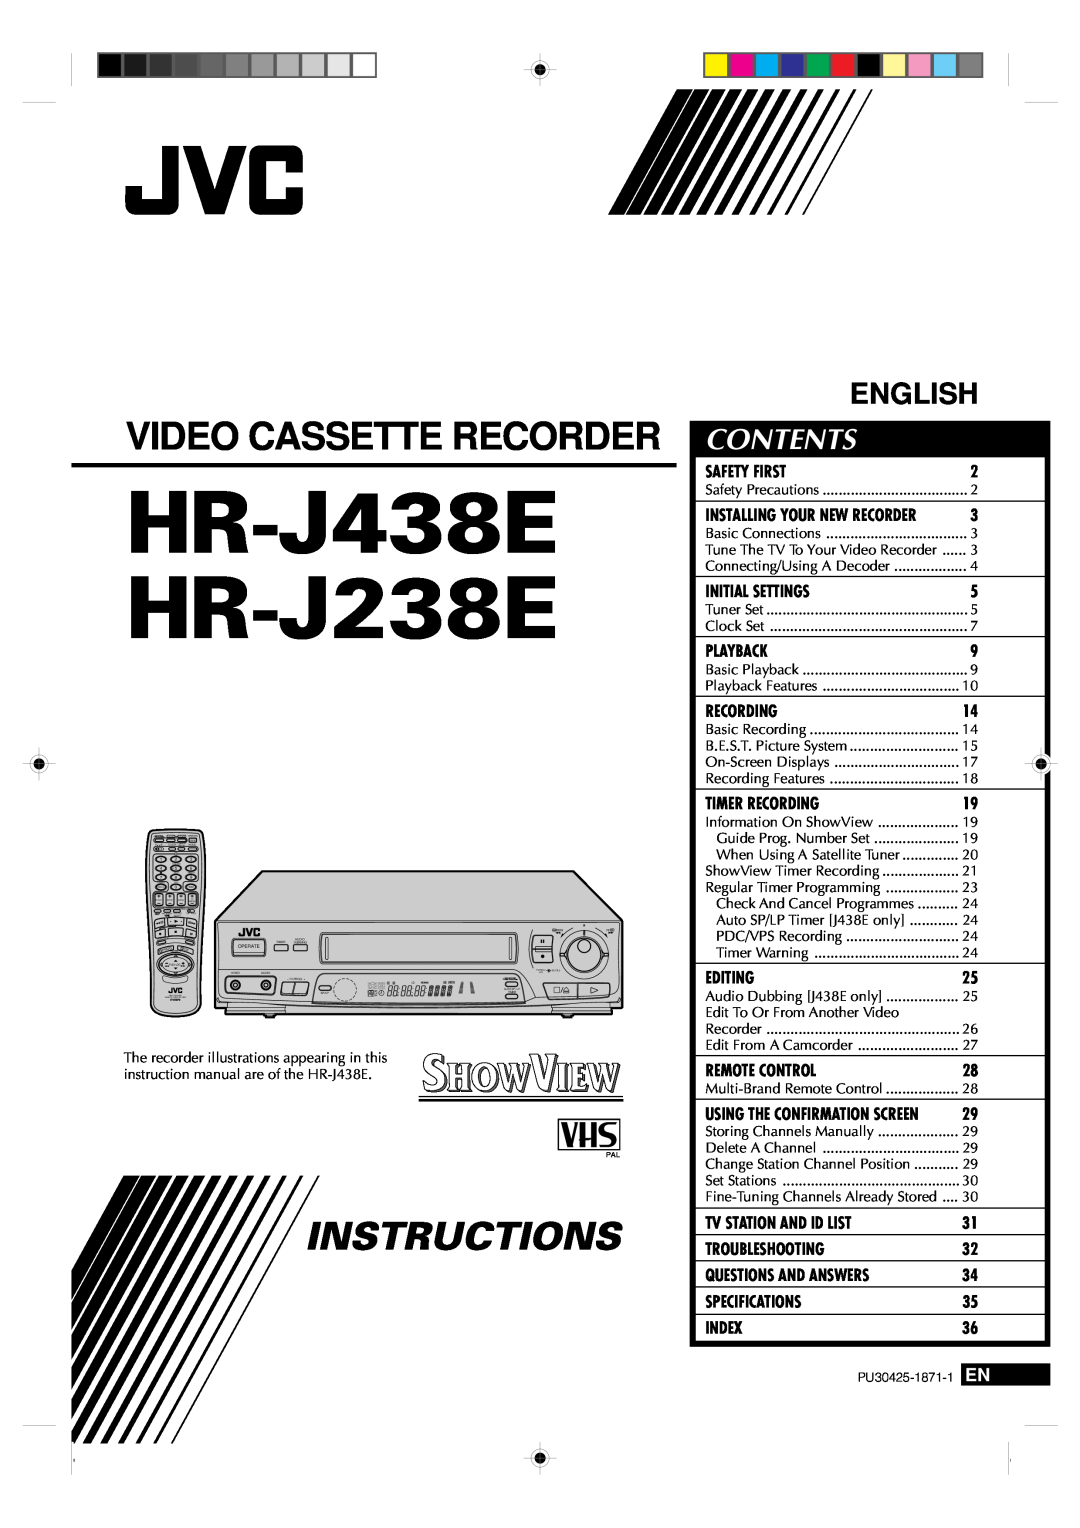 JVC specifications Contents, HR-J438E HR-J238E, Video Cassette Recorder, Instructions, English 